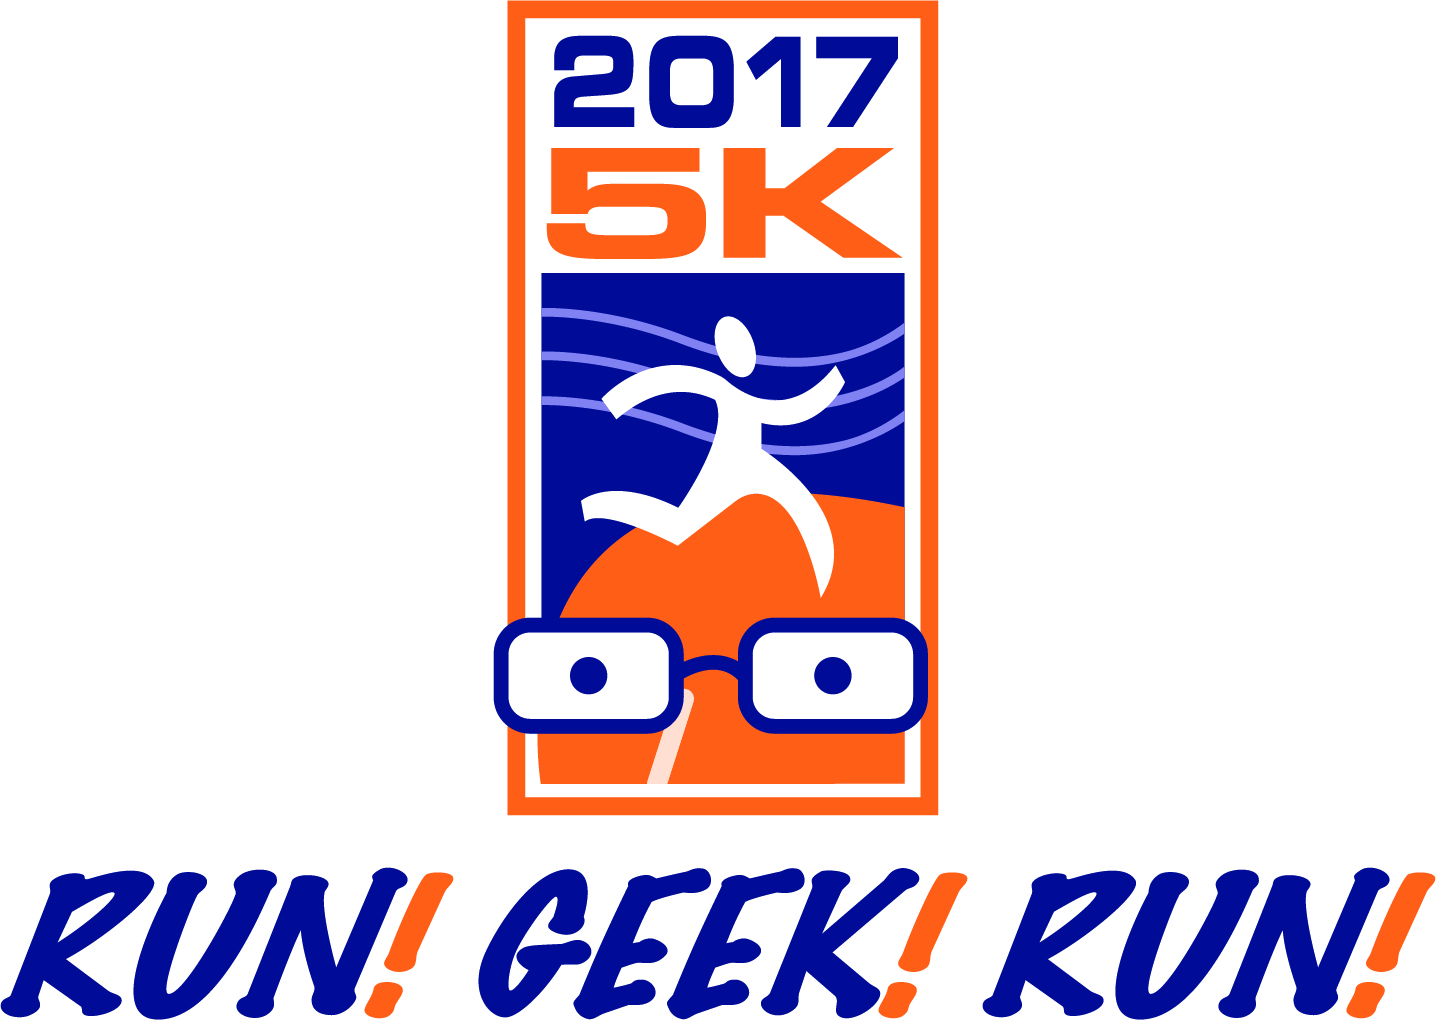 2017 Run! Geek! Run! 5k